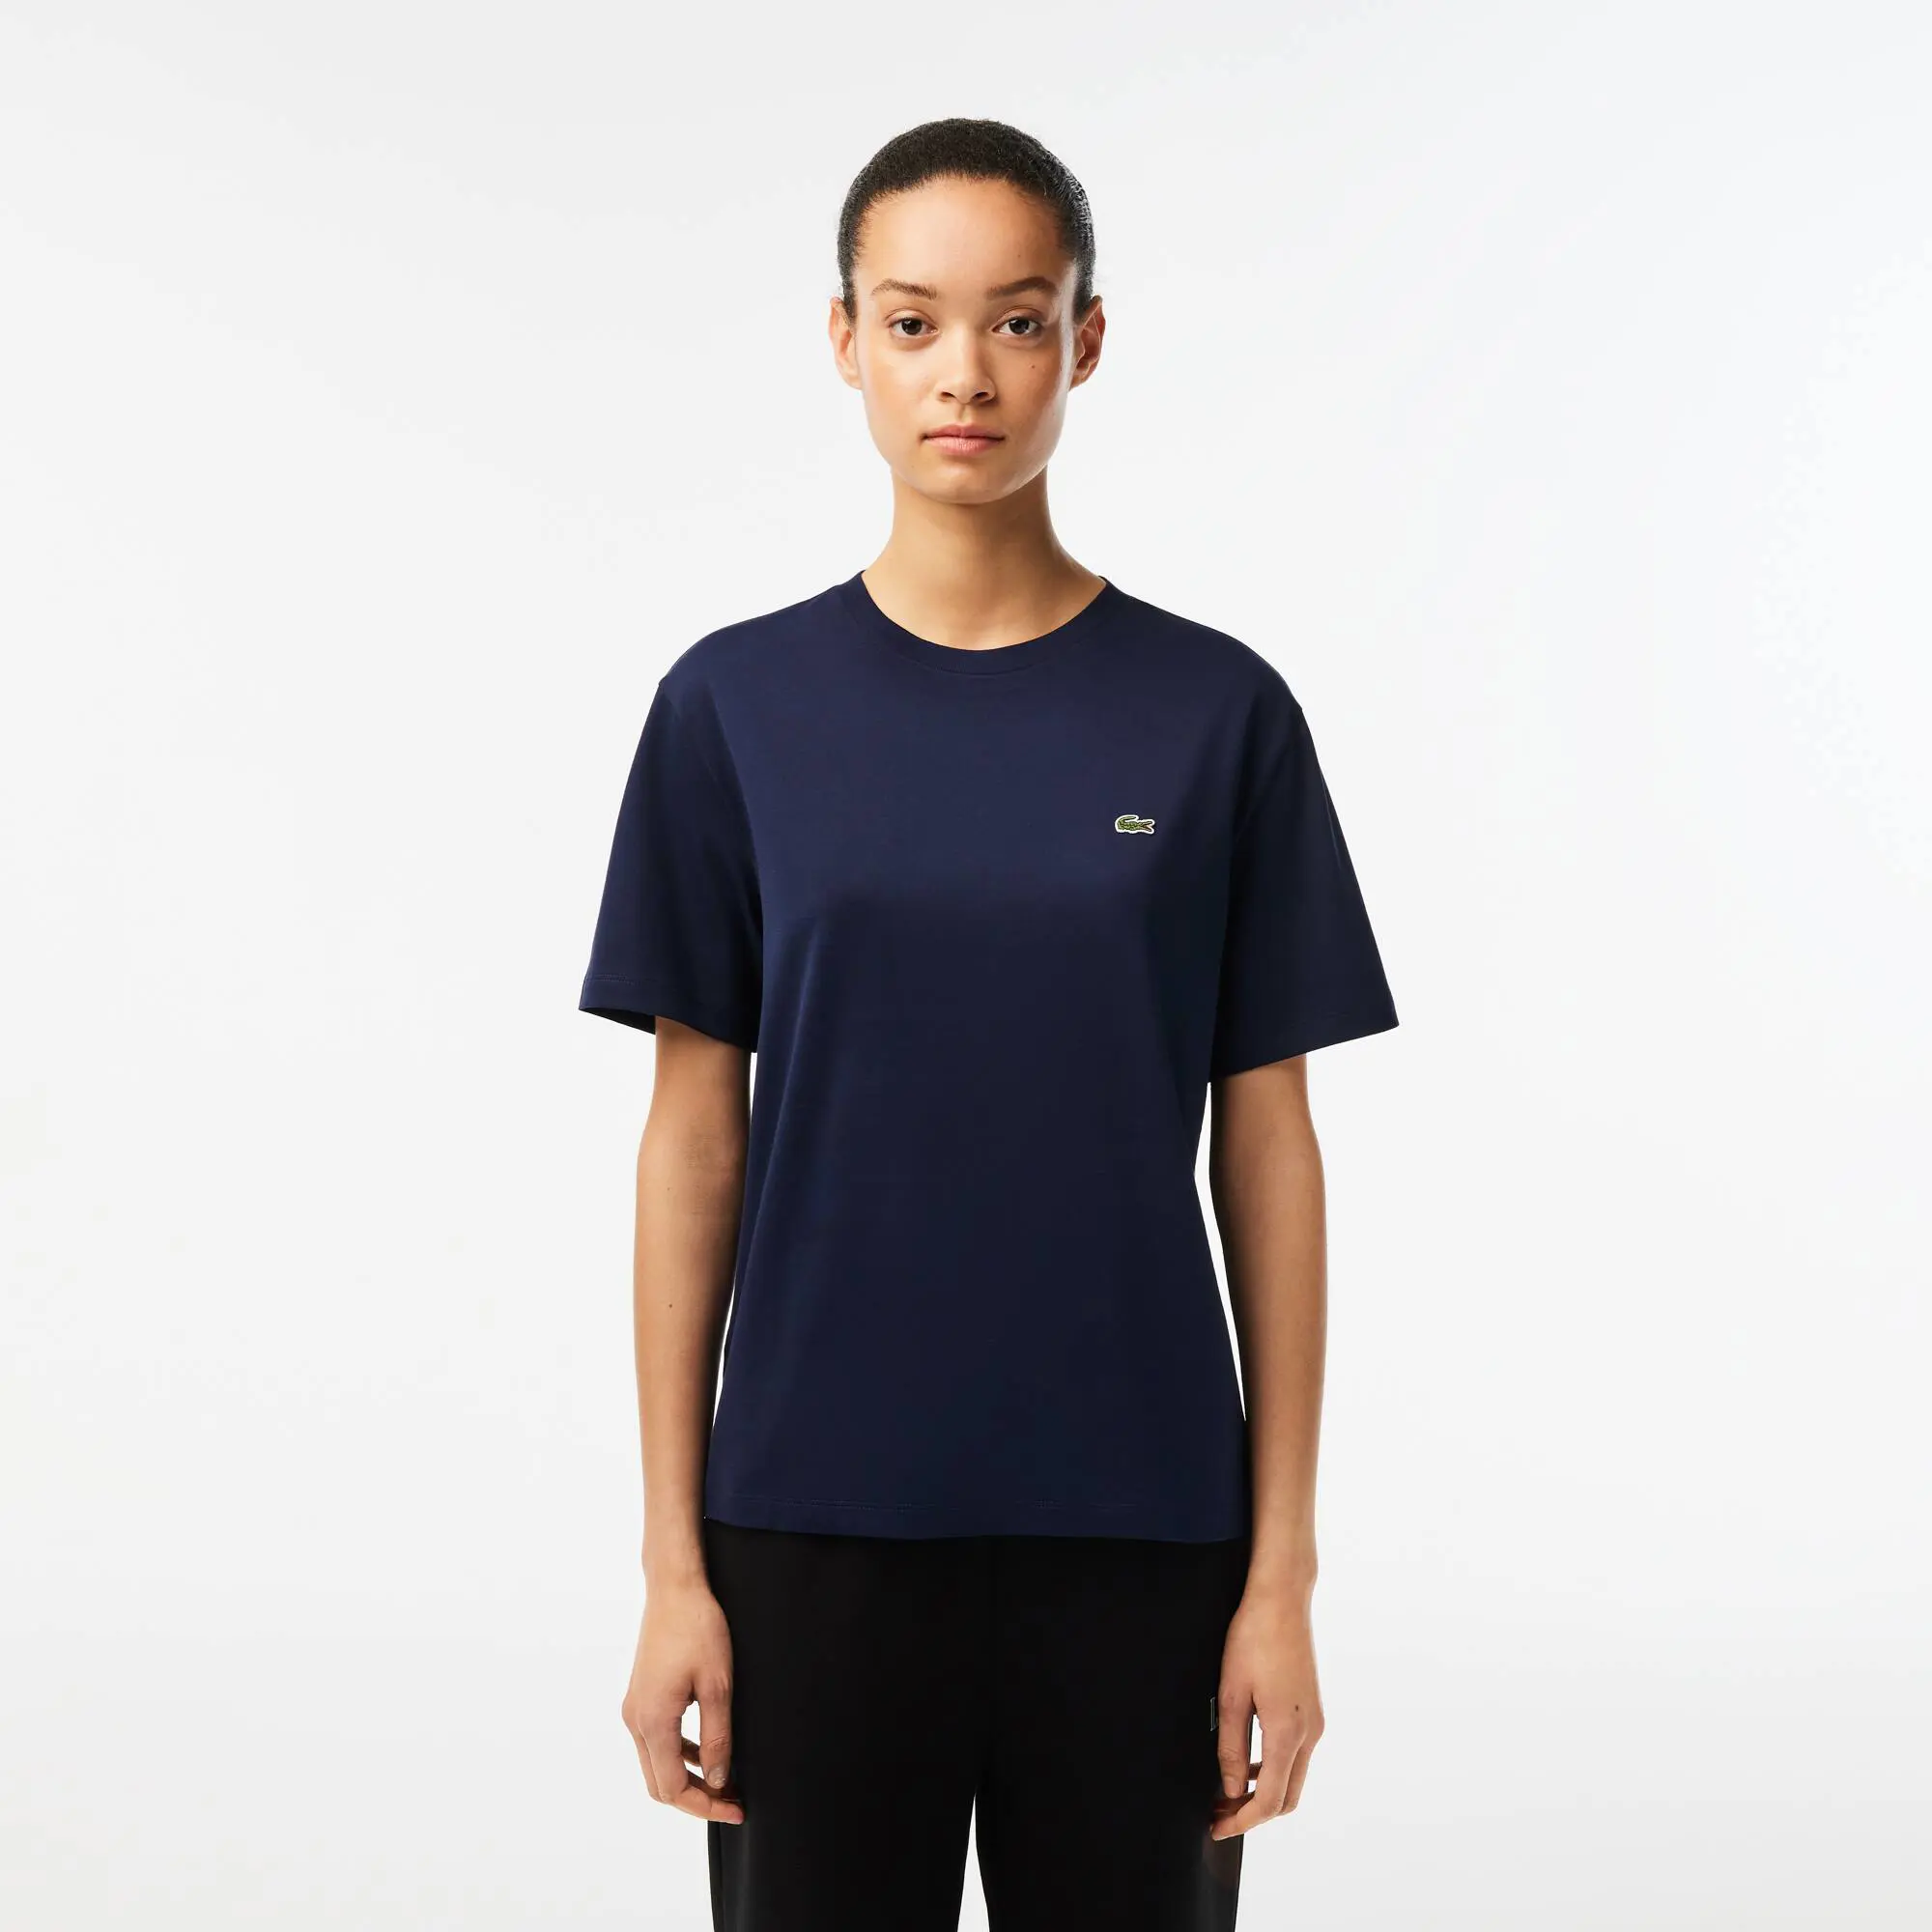 Lacoste Women’s Crew Neck Premium Cotton T-shirt. 1